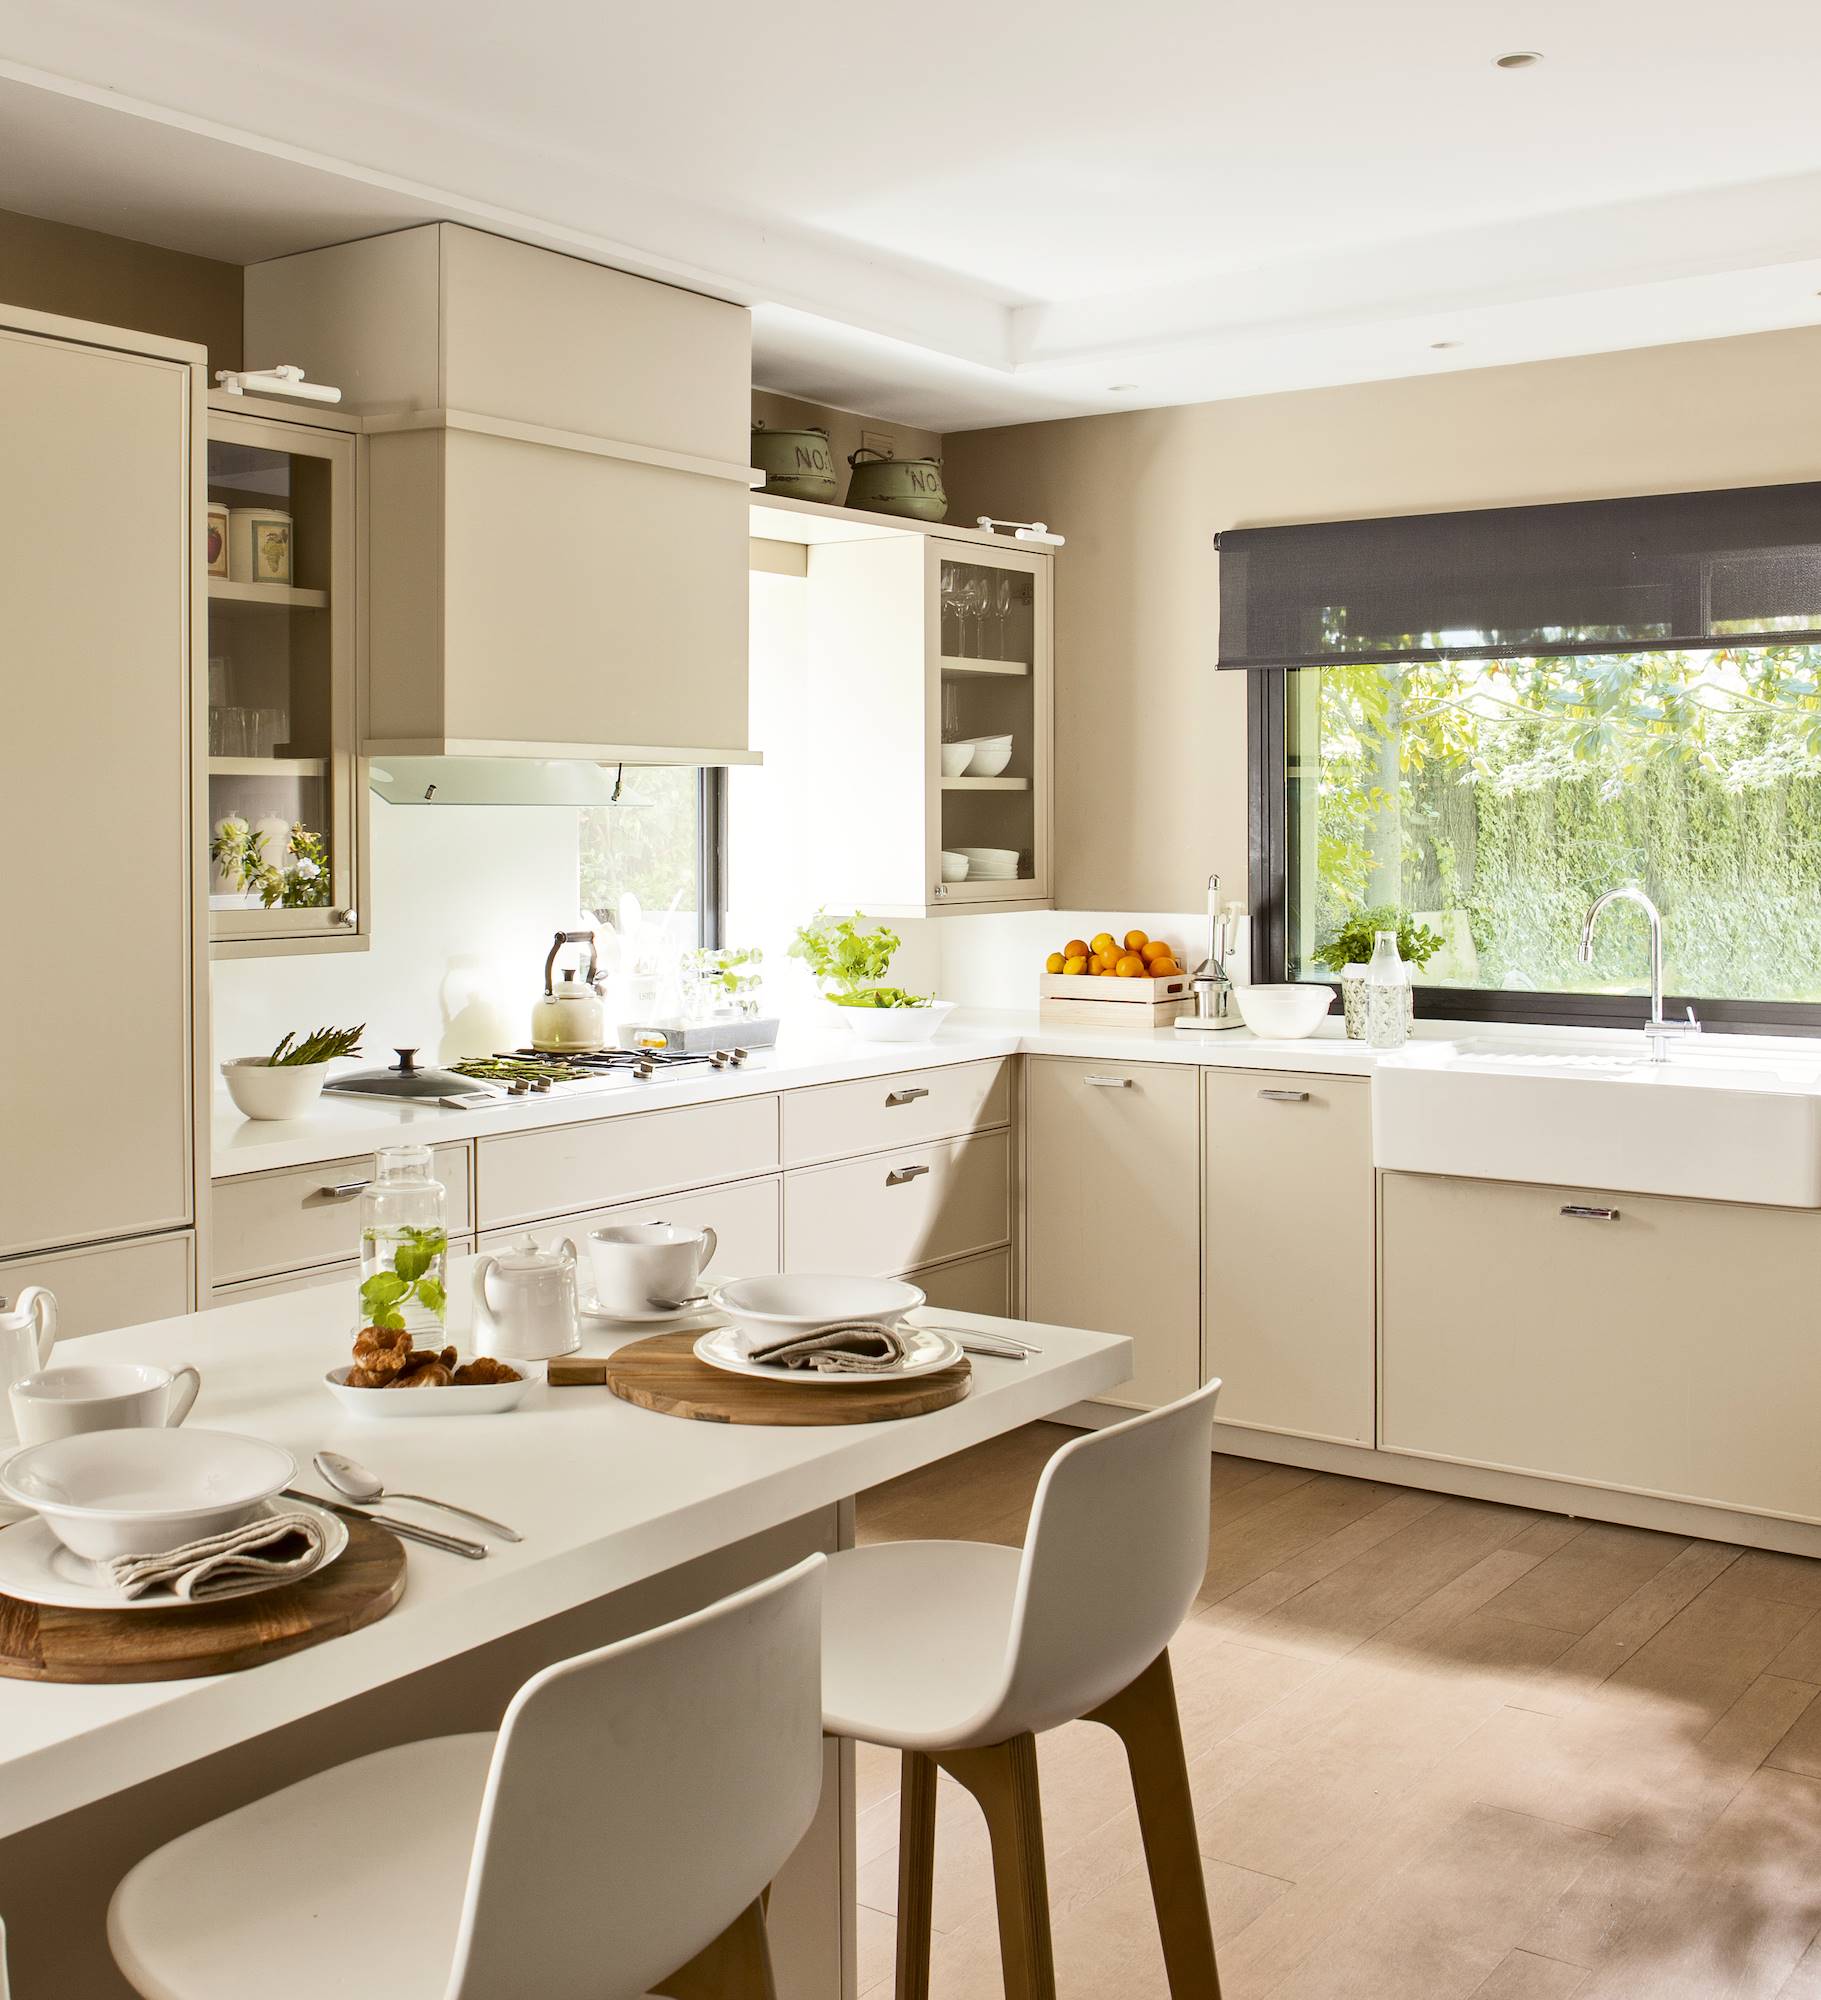 Moderna cocina con mobiliario en color crema, ofice a juego y pavimento de madera. 